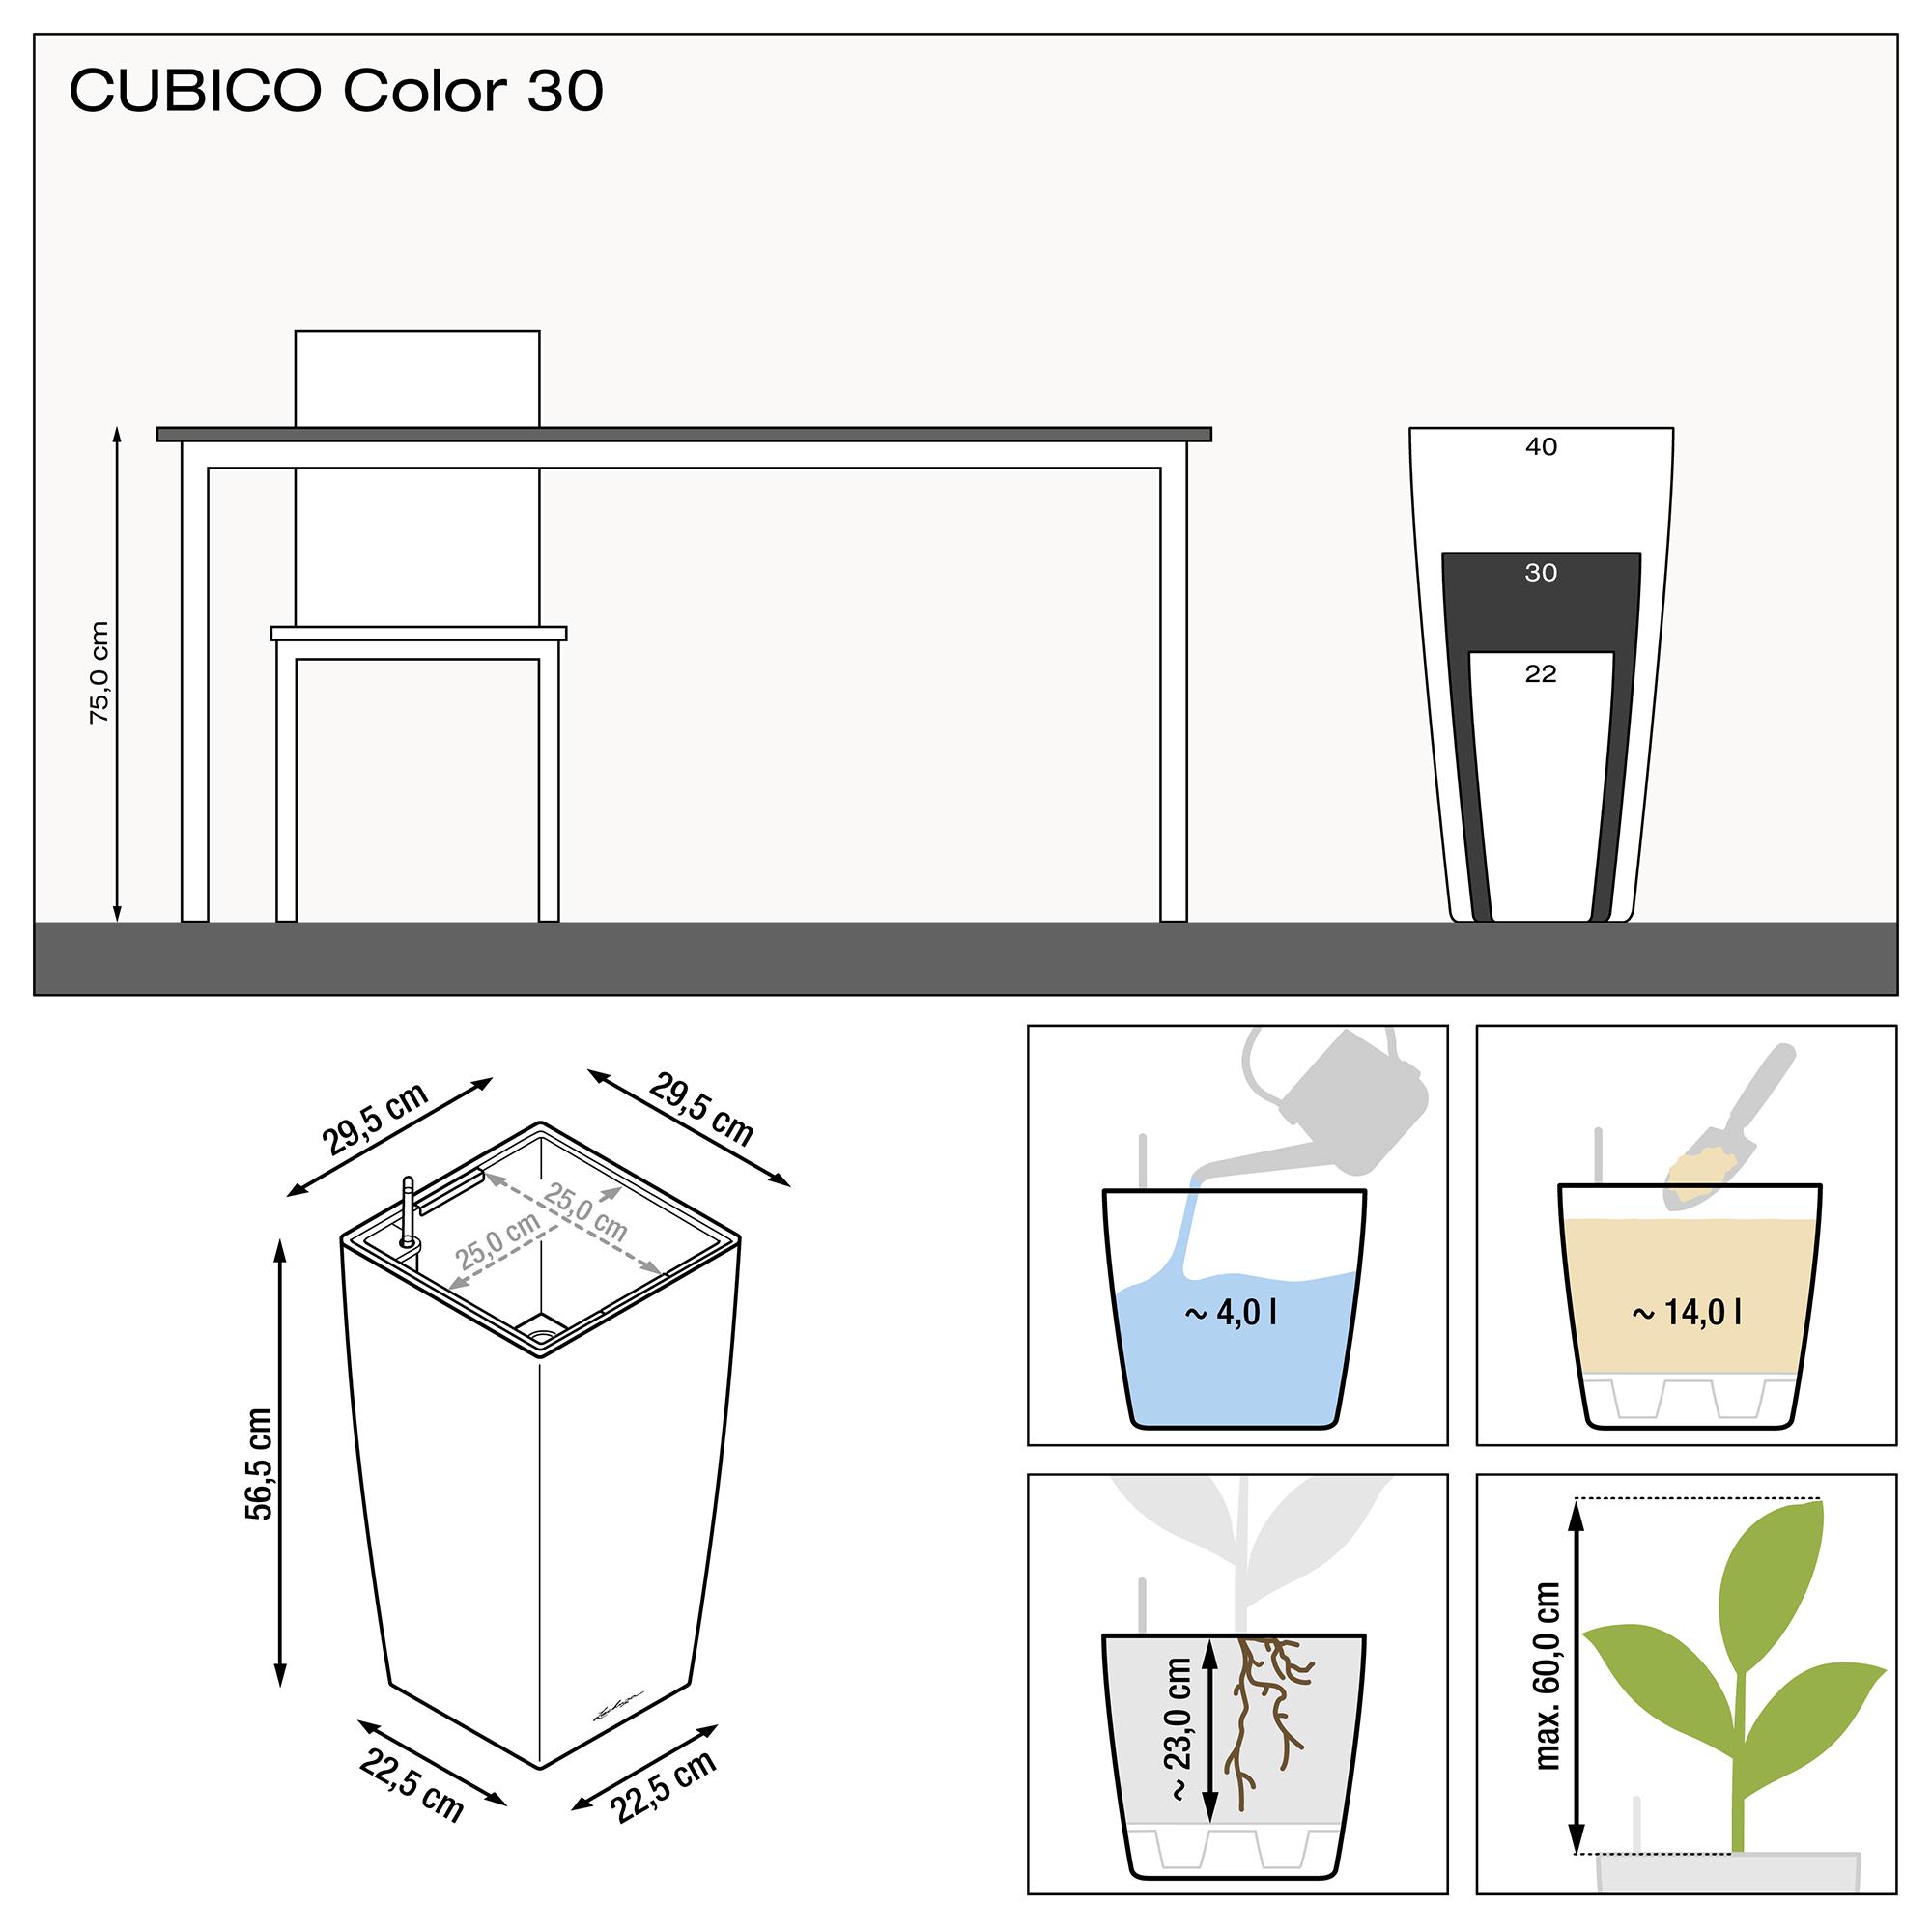 le_cubico-color30_product_addi_nz Thumb